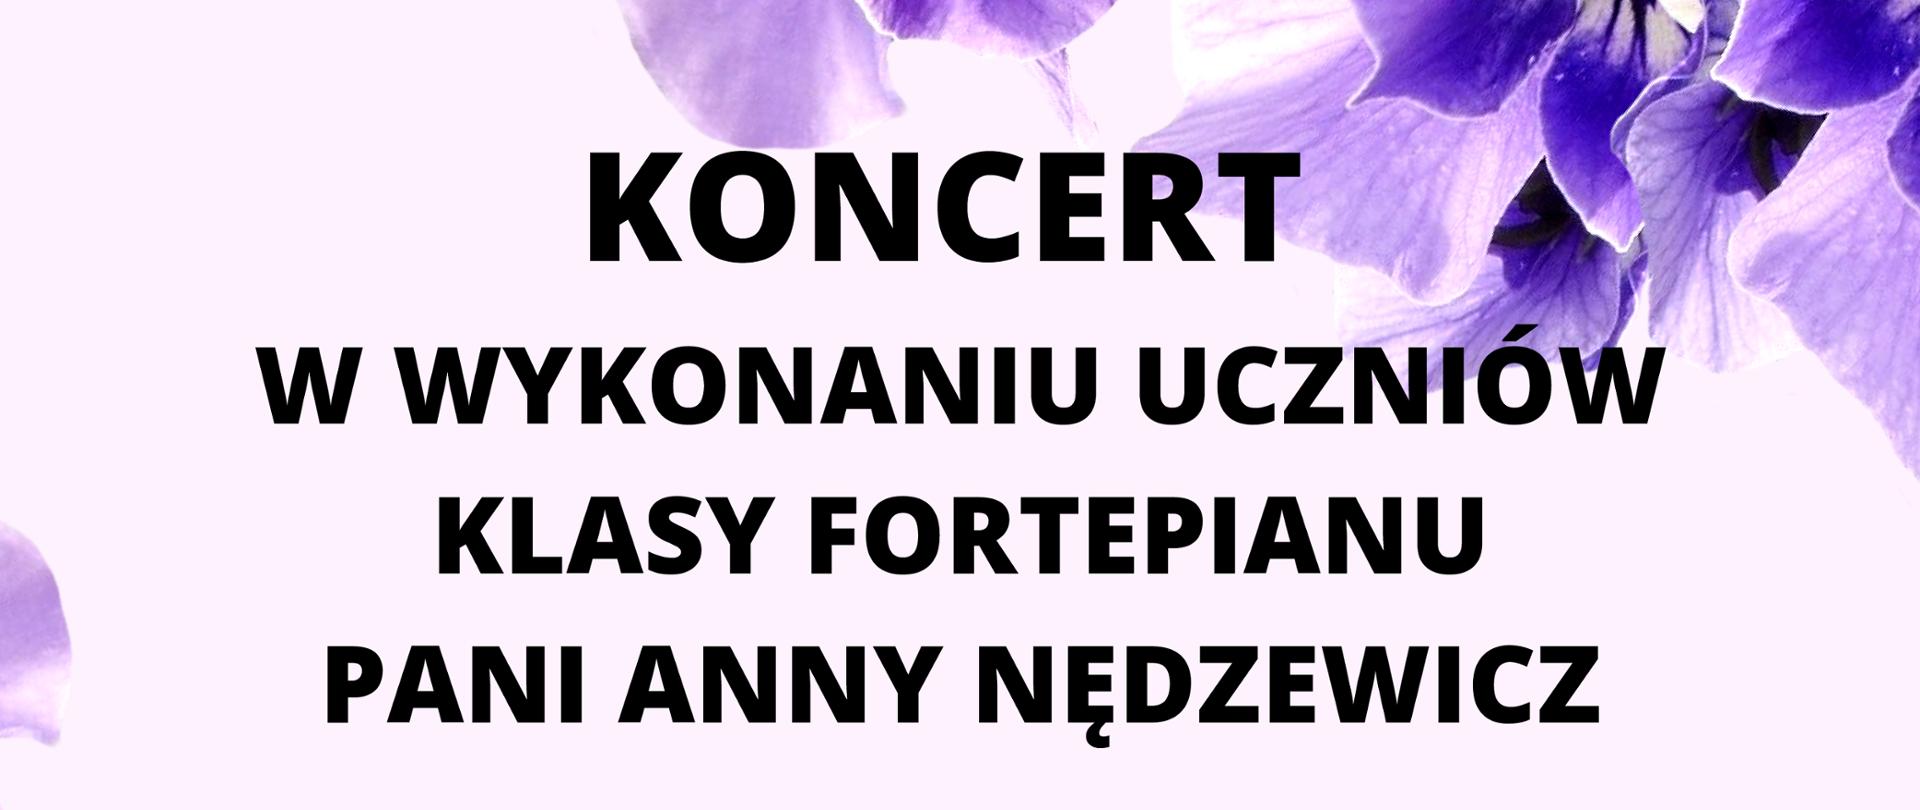 Plakat na jasno różowym tle zdjęcia fioletowych bratków; pośrodku informacja: "Koncert w wykonaniu uczniów klasy fortepianu pani Anny Nędzewicz; czwartek 25.05.2023 og. 15:30 sala kameralna"